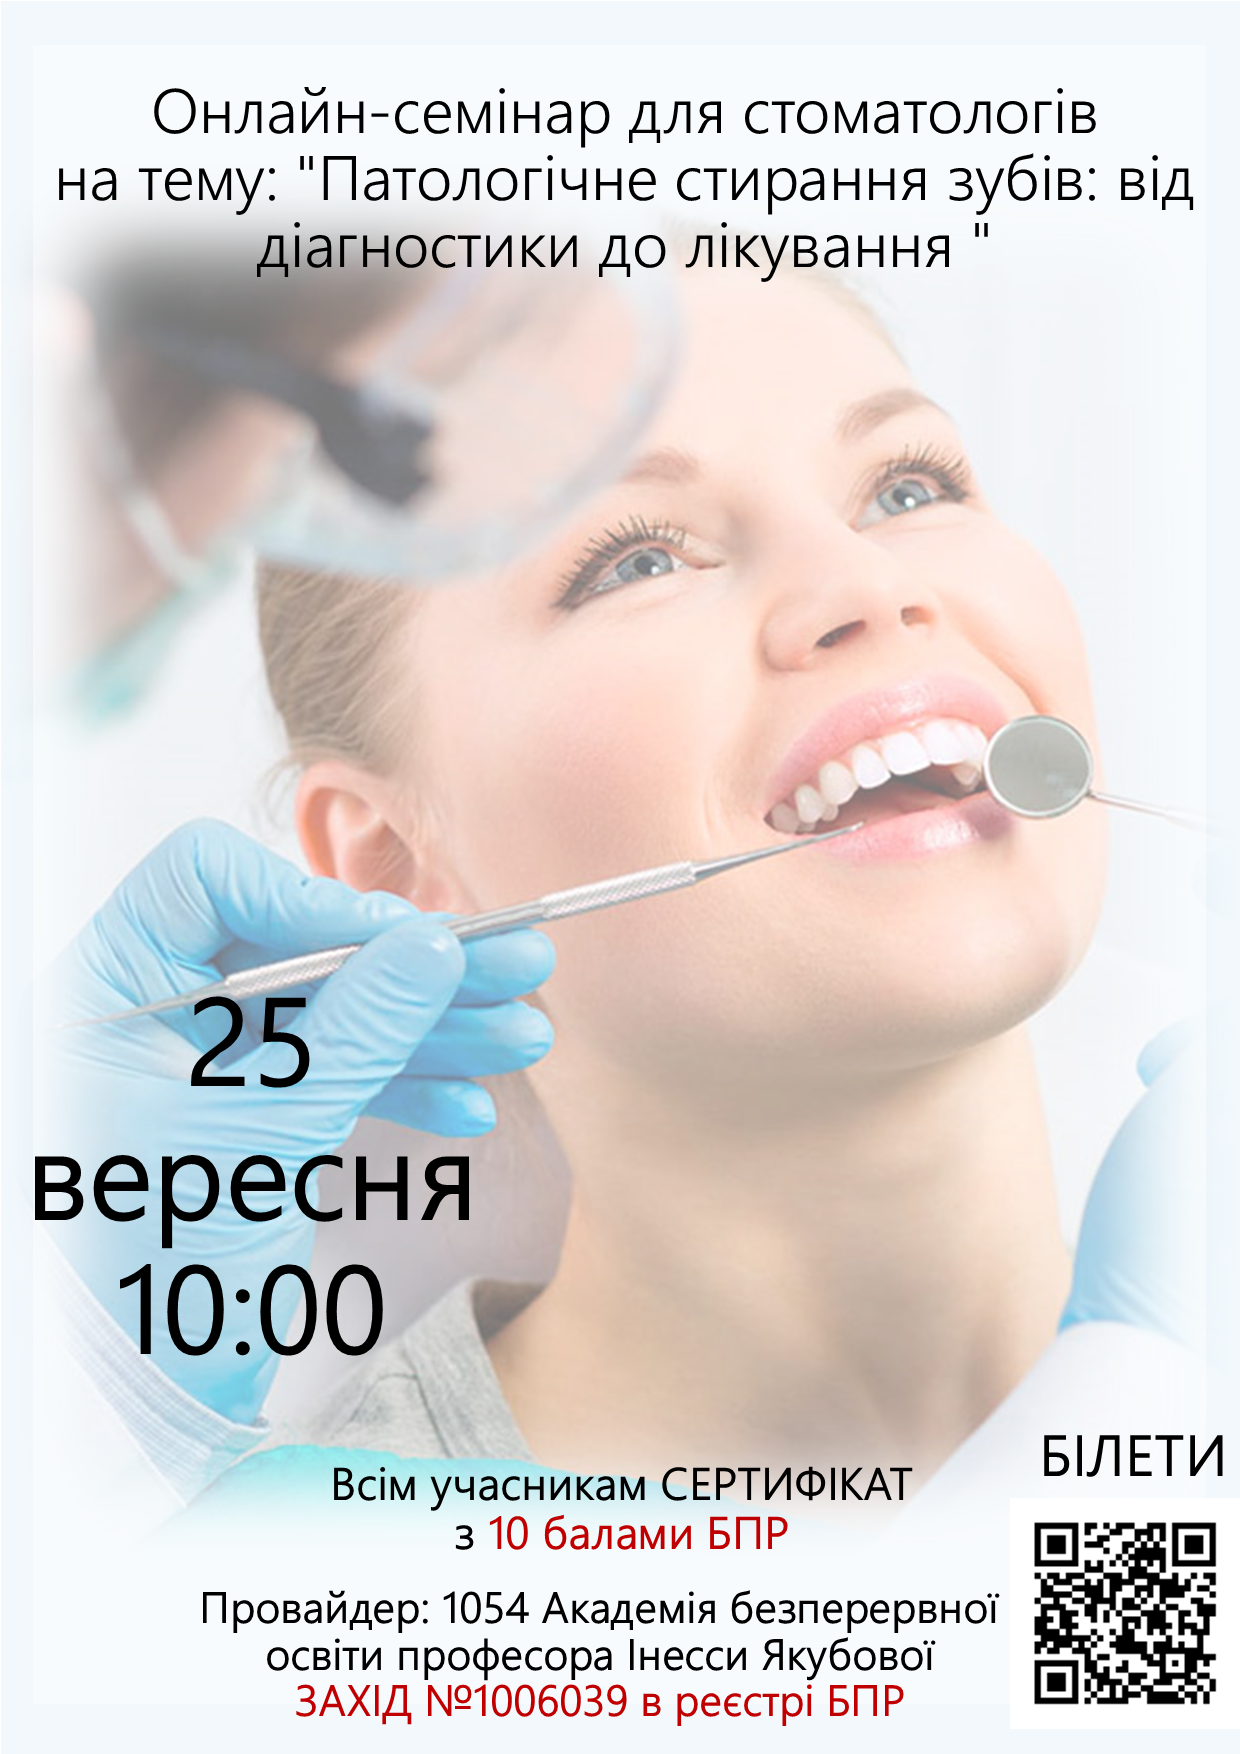 Онлайн-семінар для стоматолога на тему: Патологічне стирання зубів: від діагностики до лікування